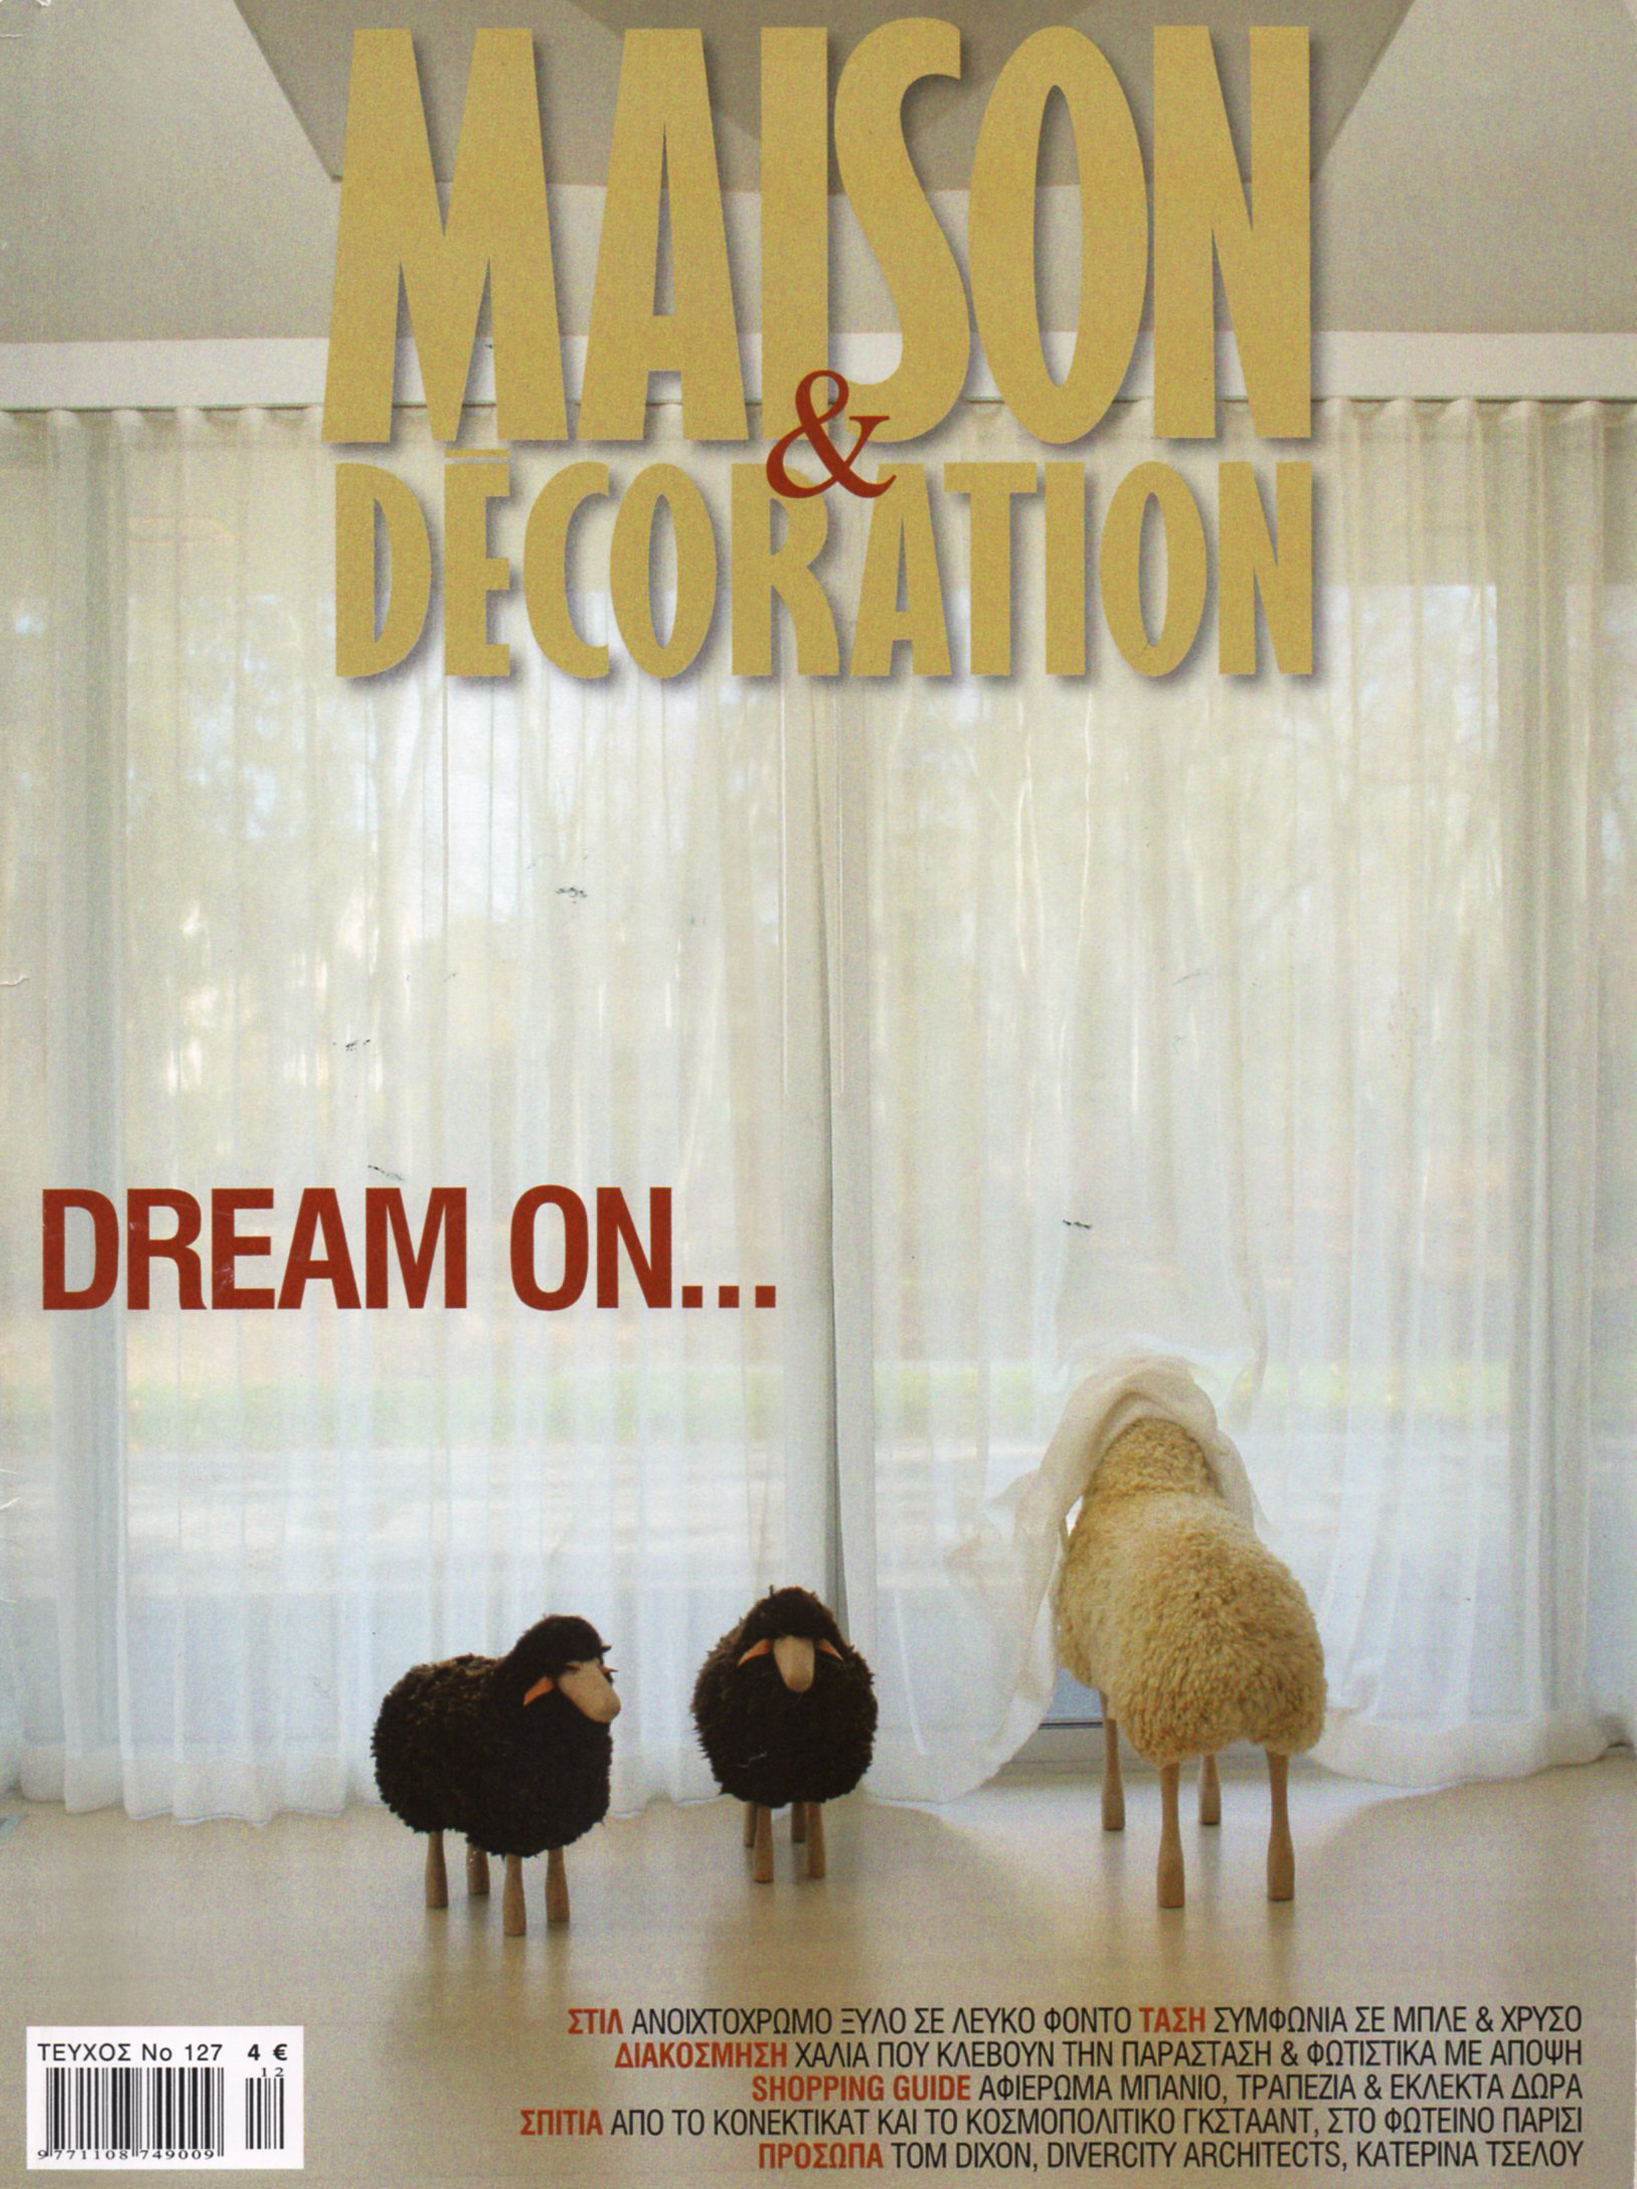 Maison & Decoration magazine